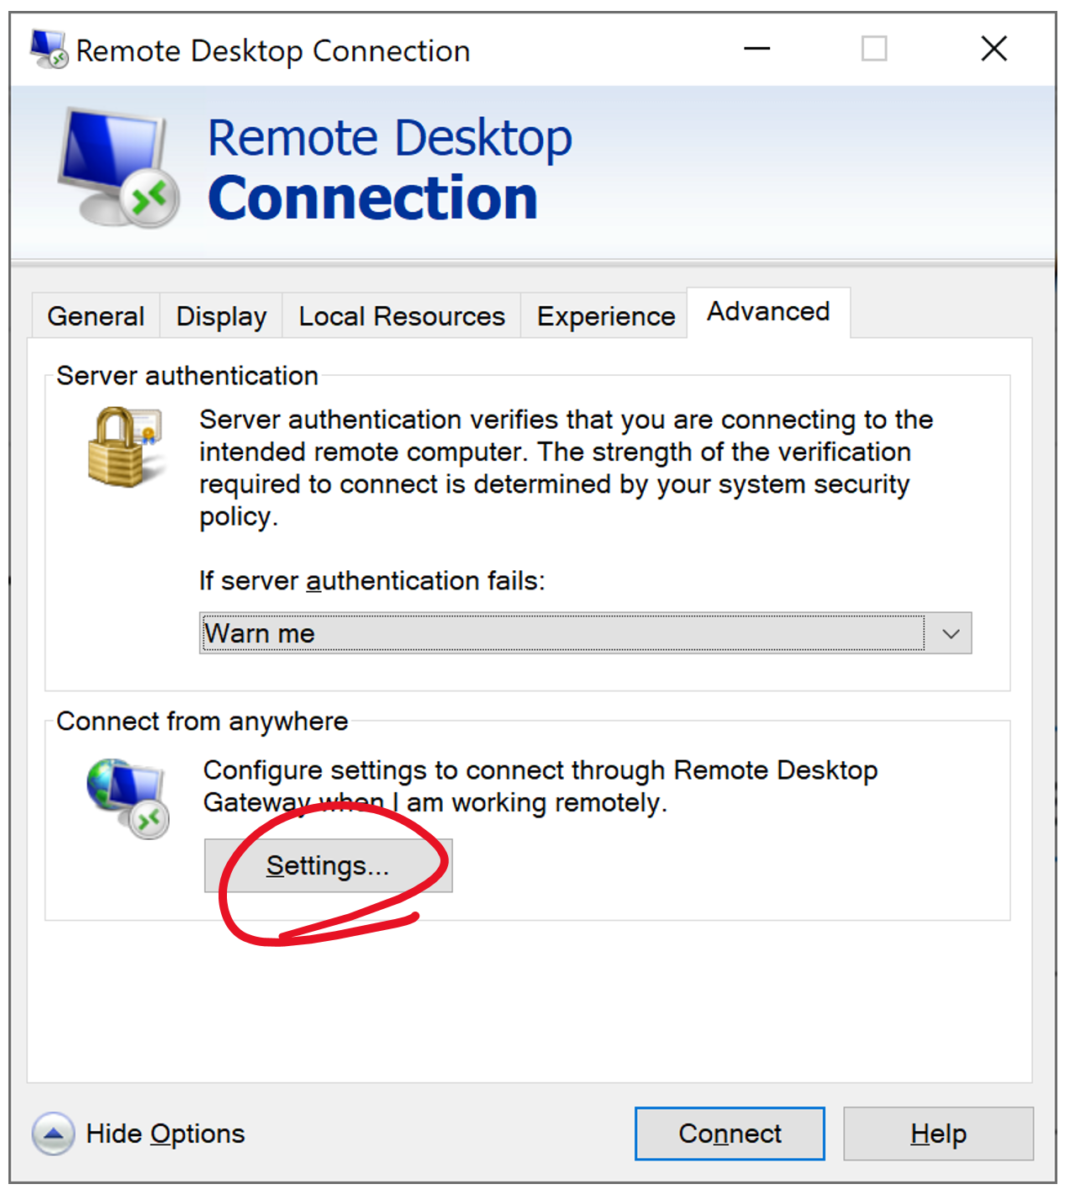 Remote Desktop Connection -- Advanced Settings button